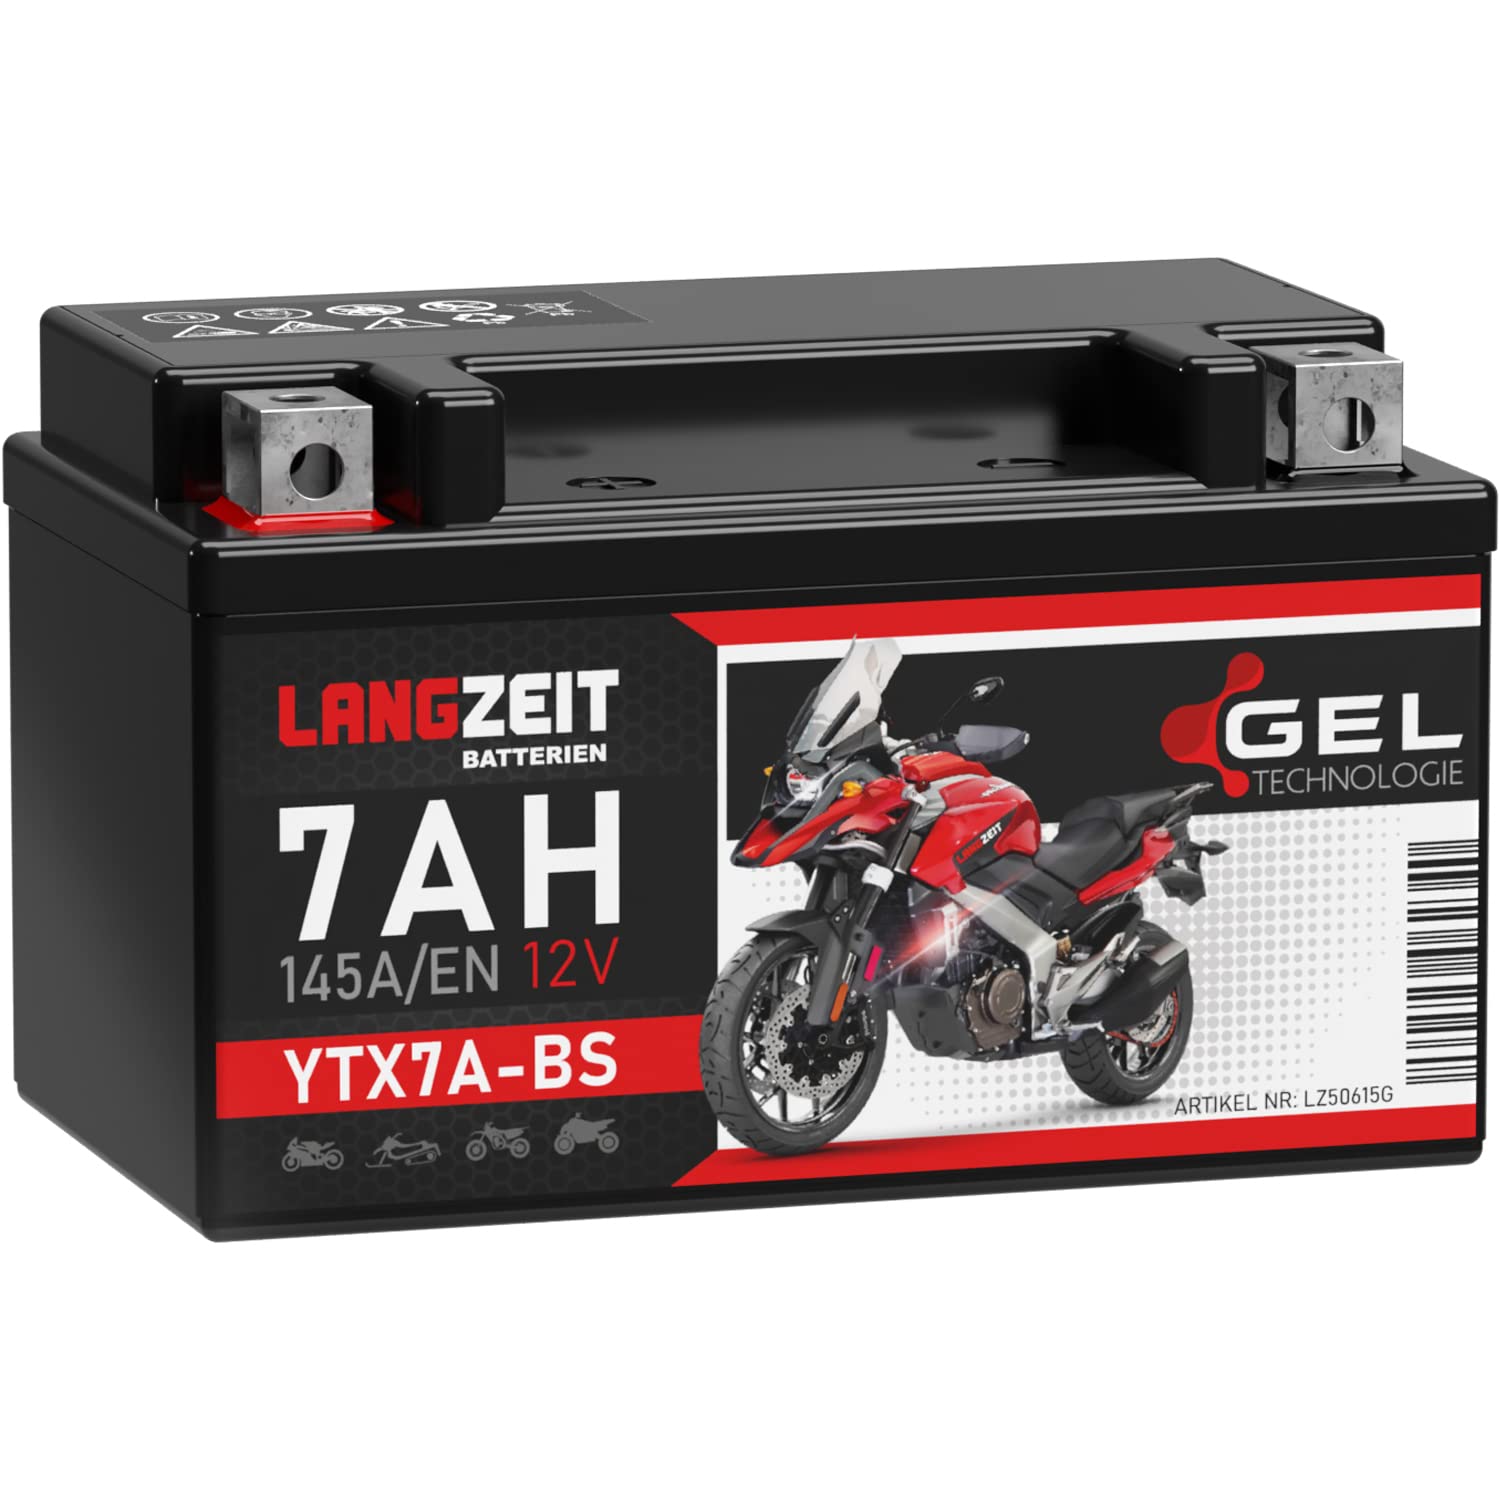 LANGZEIT YTX7A-BS Motorradbatterie 12V 7Ah 145A/EN Gel Batterie 12V Roller Batterie doppelte Lebensdauer entspricht 50615 CTX7A-BS JMTX7A-BS vorgeladen auslaufsicher wartungsfrei ersetzt 6Ah von LANGZEIT Batterien